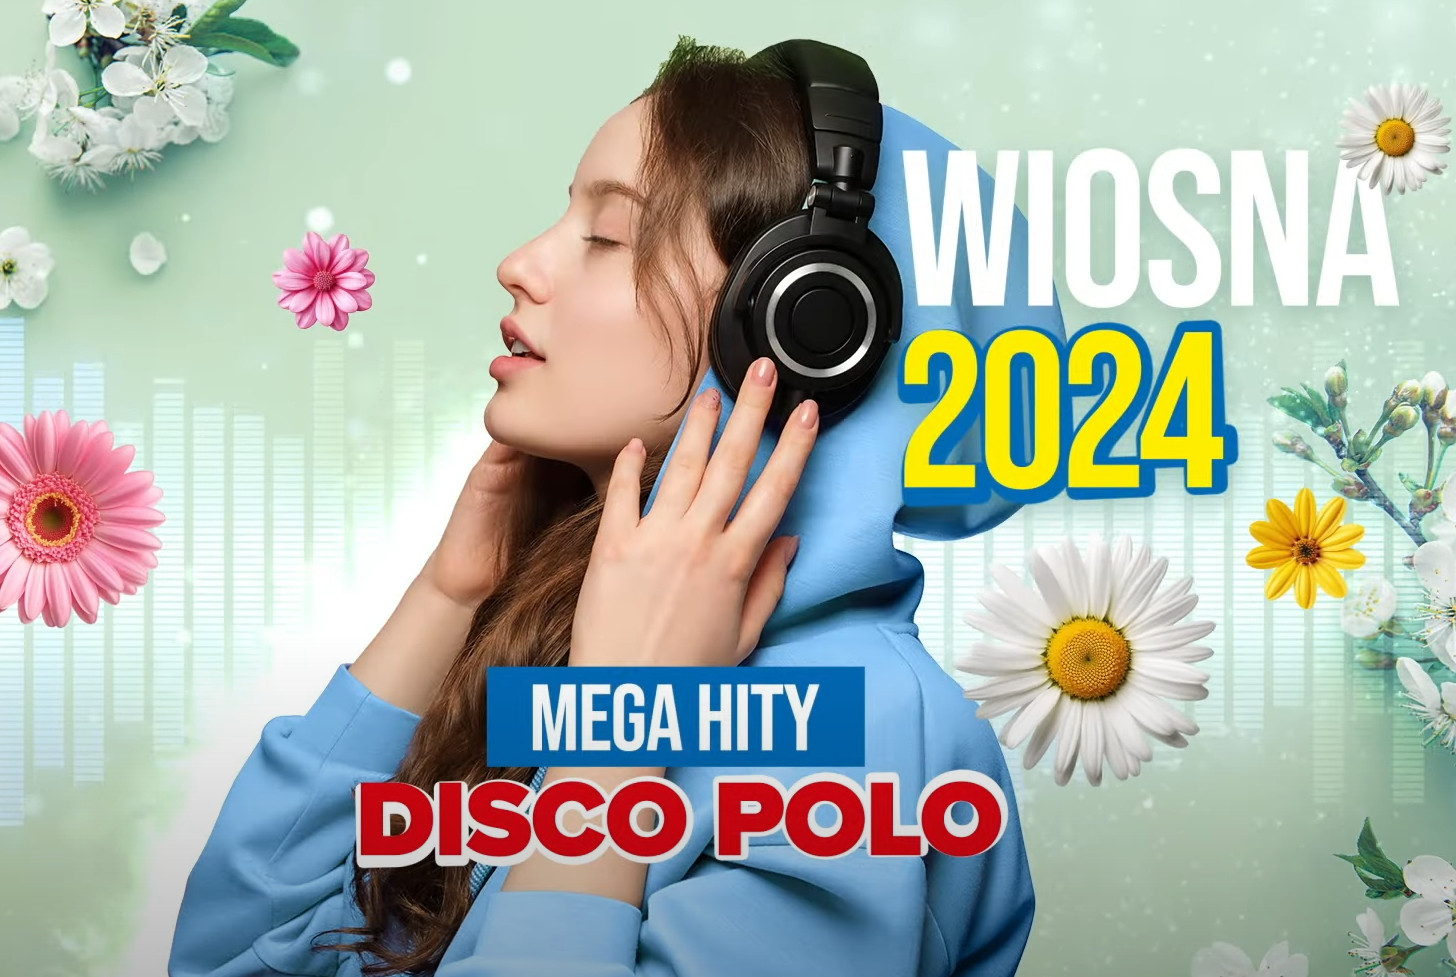 Największe przeboje disco polo ZA DARMO! Wiosna 2024 - Mega hity Disco Polo! 
